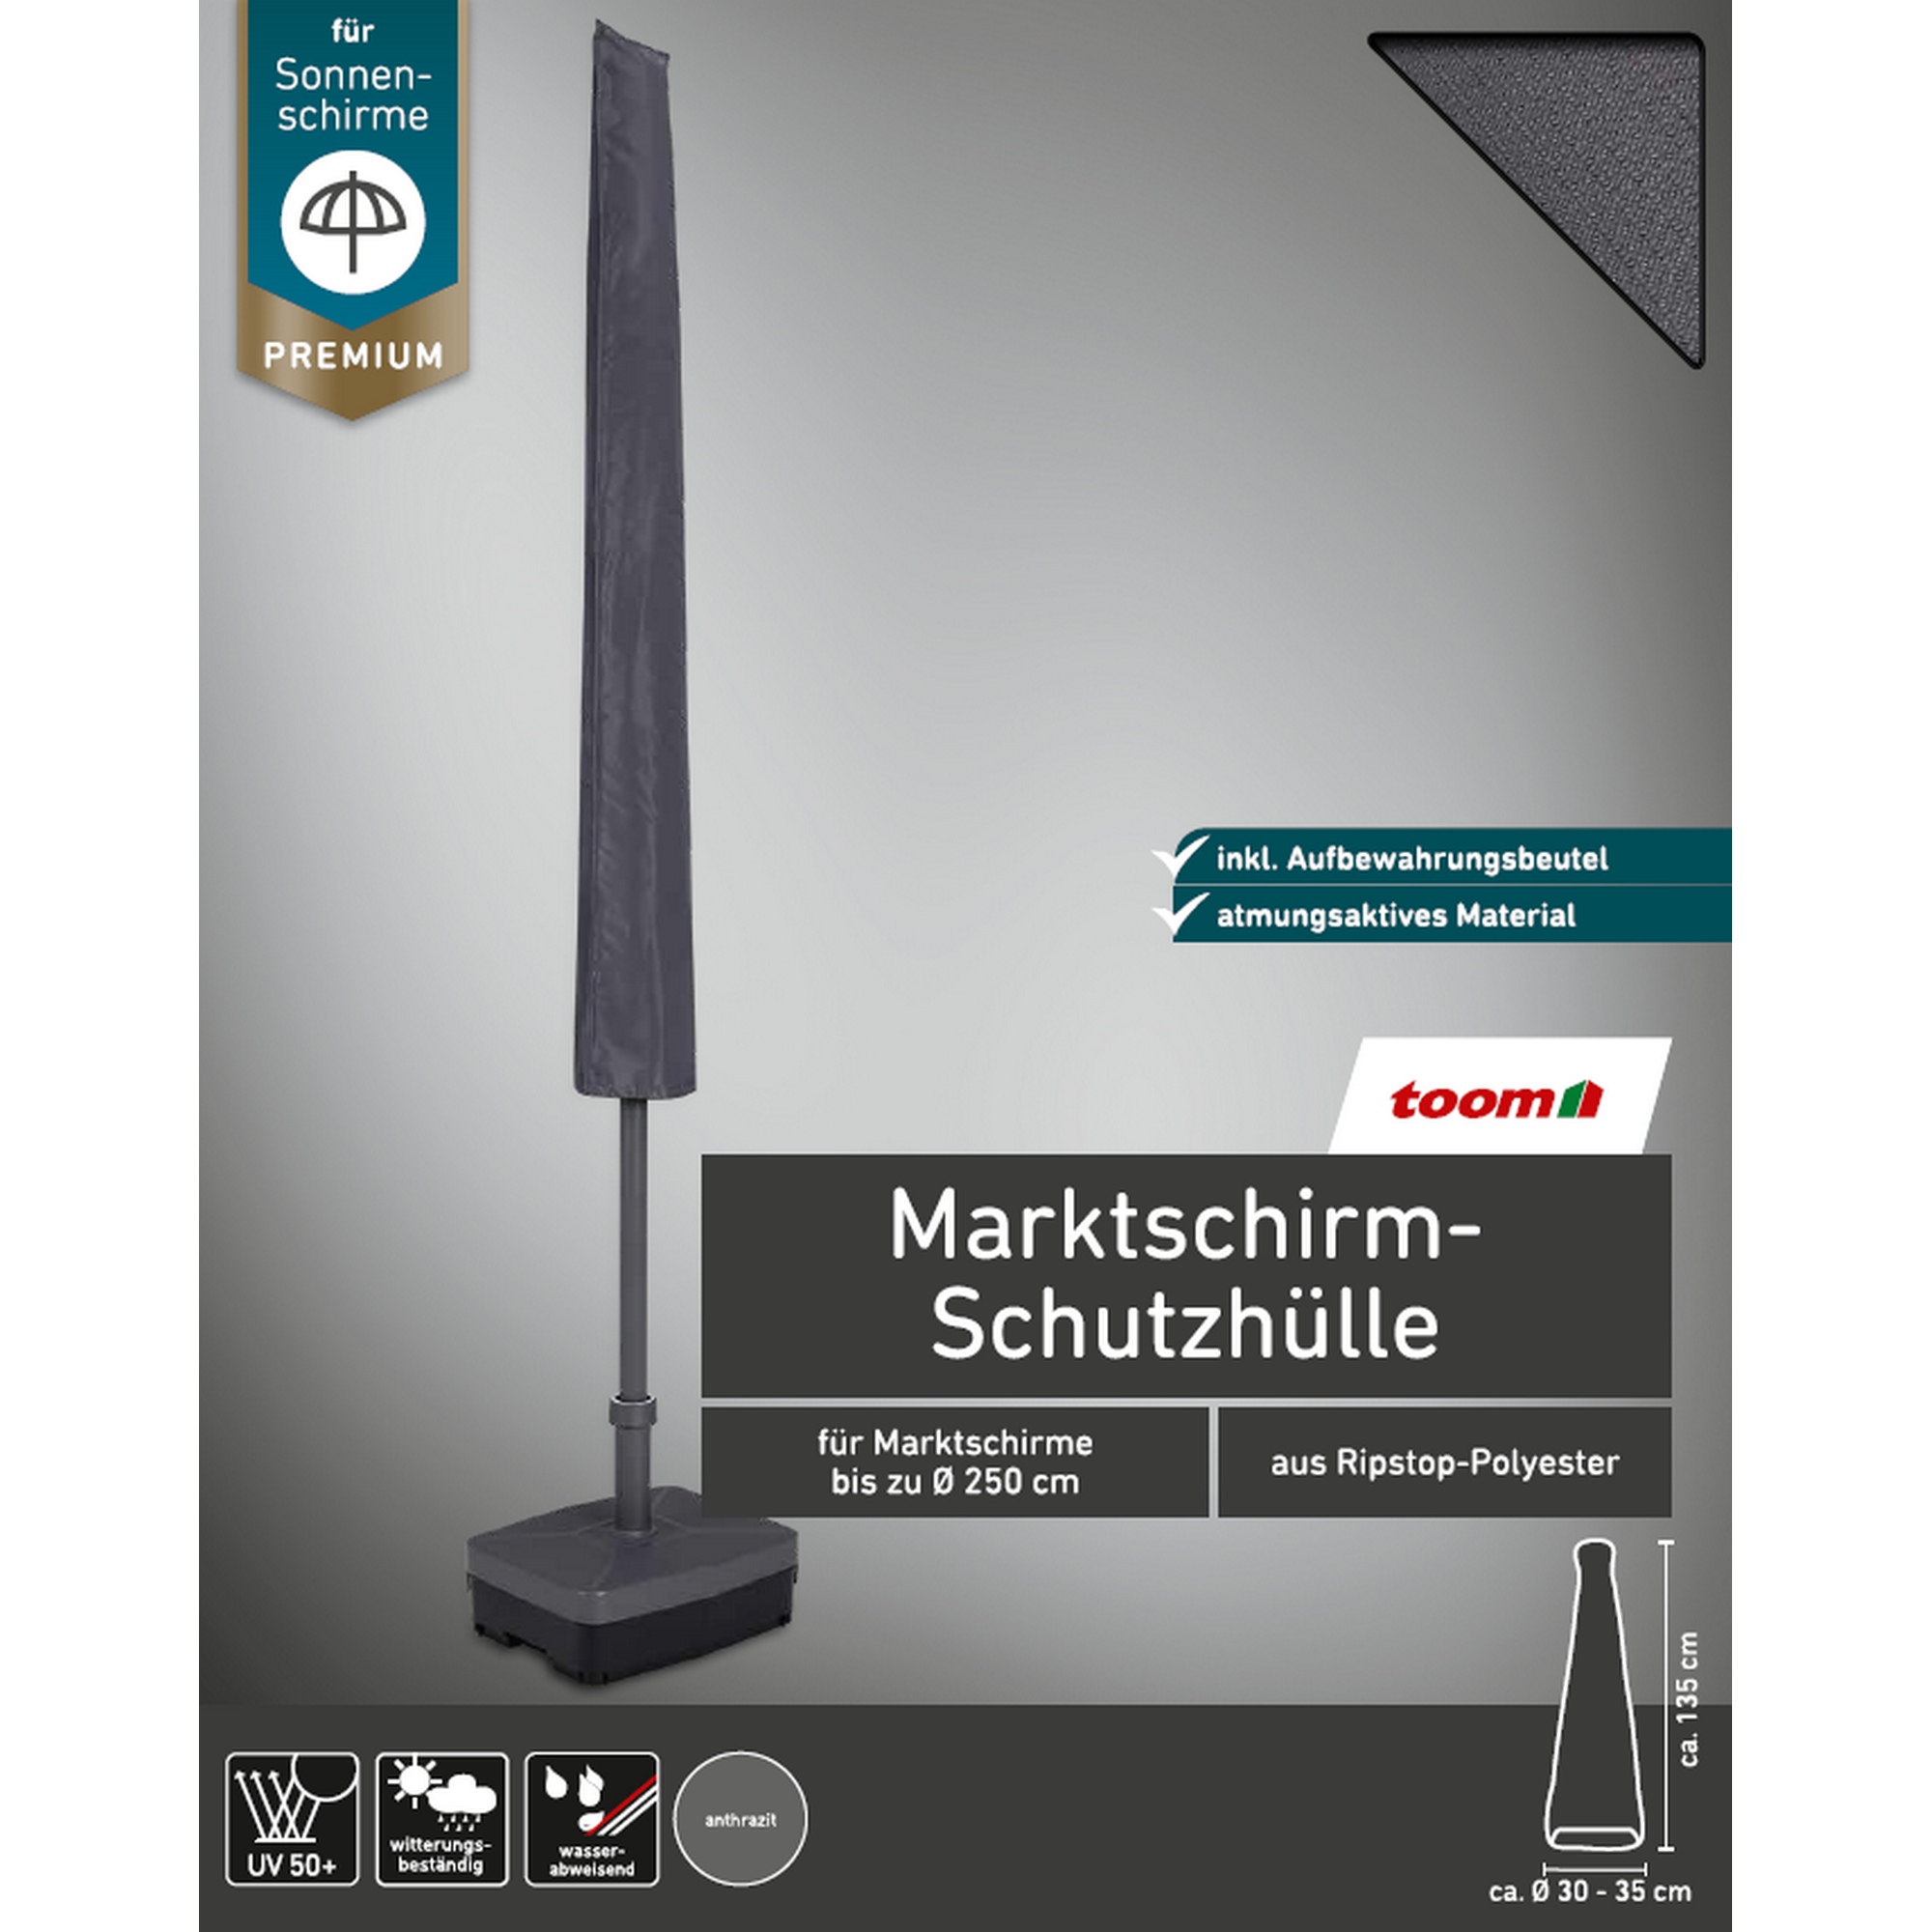 Premium-Schutzhülle für Marktschirme bis Ø 250 cm + product picture